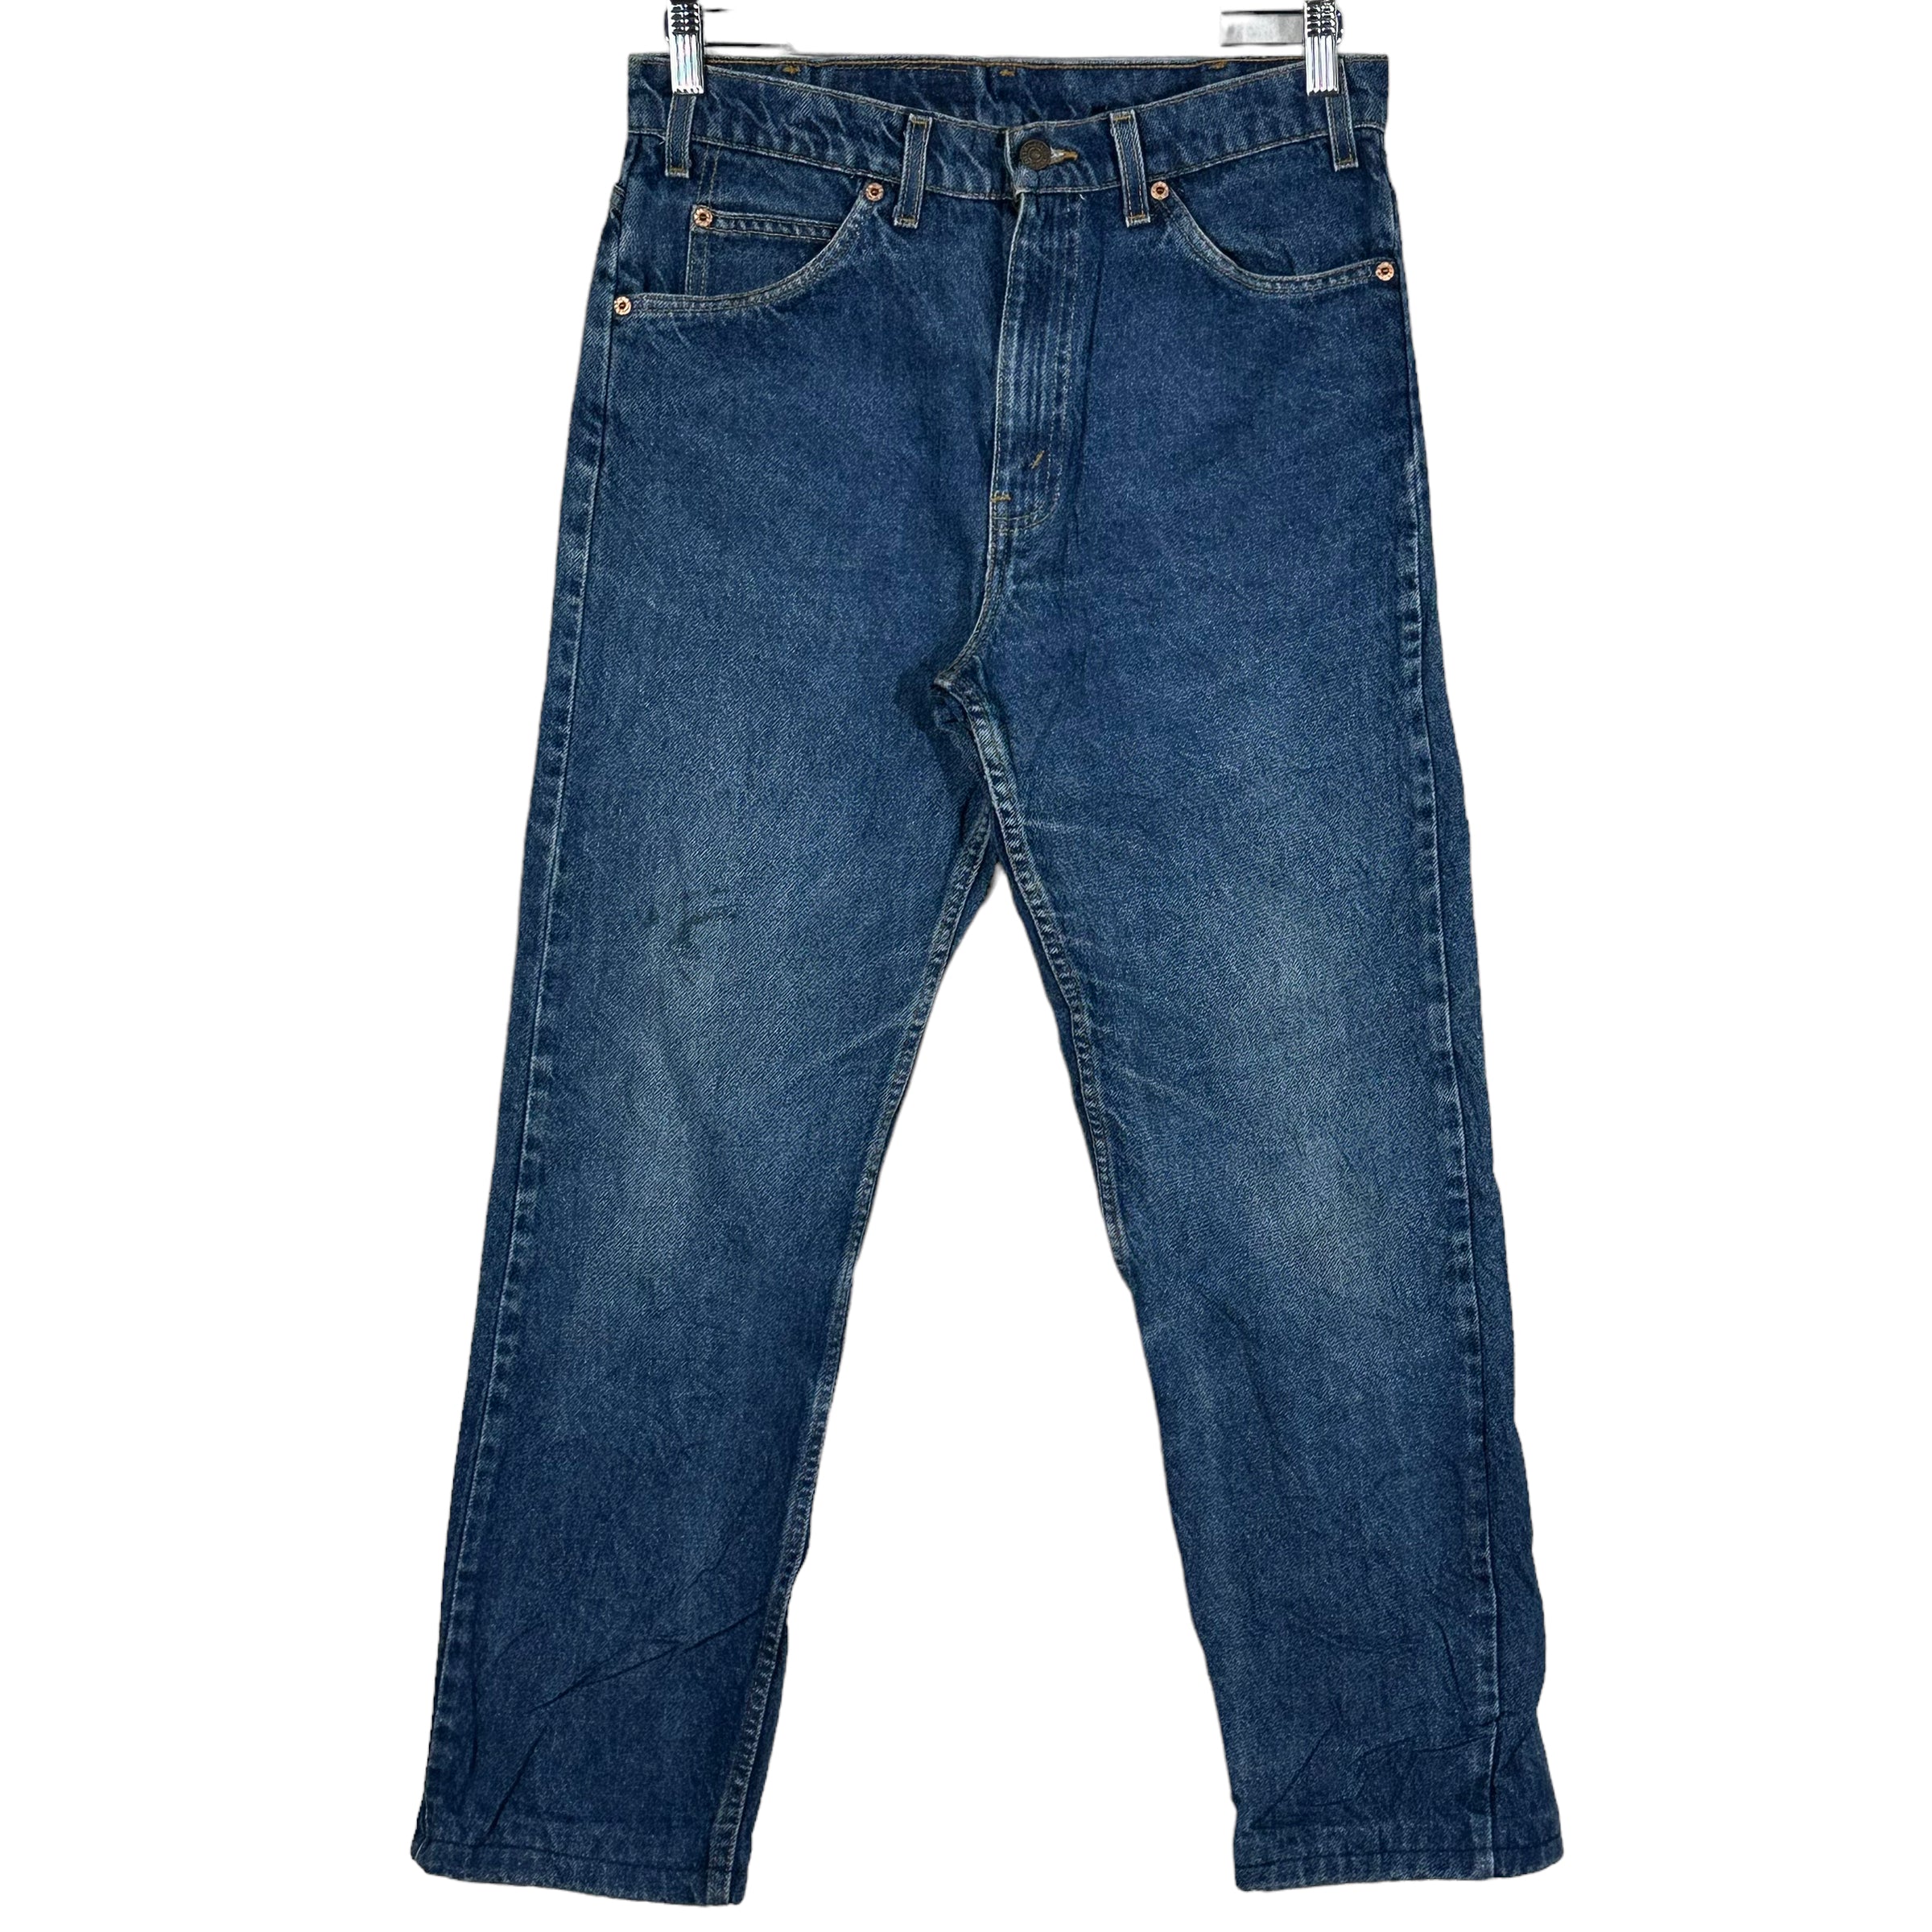 Vintage Levi's 505 Paisley Pocket Denim Jeans 90s